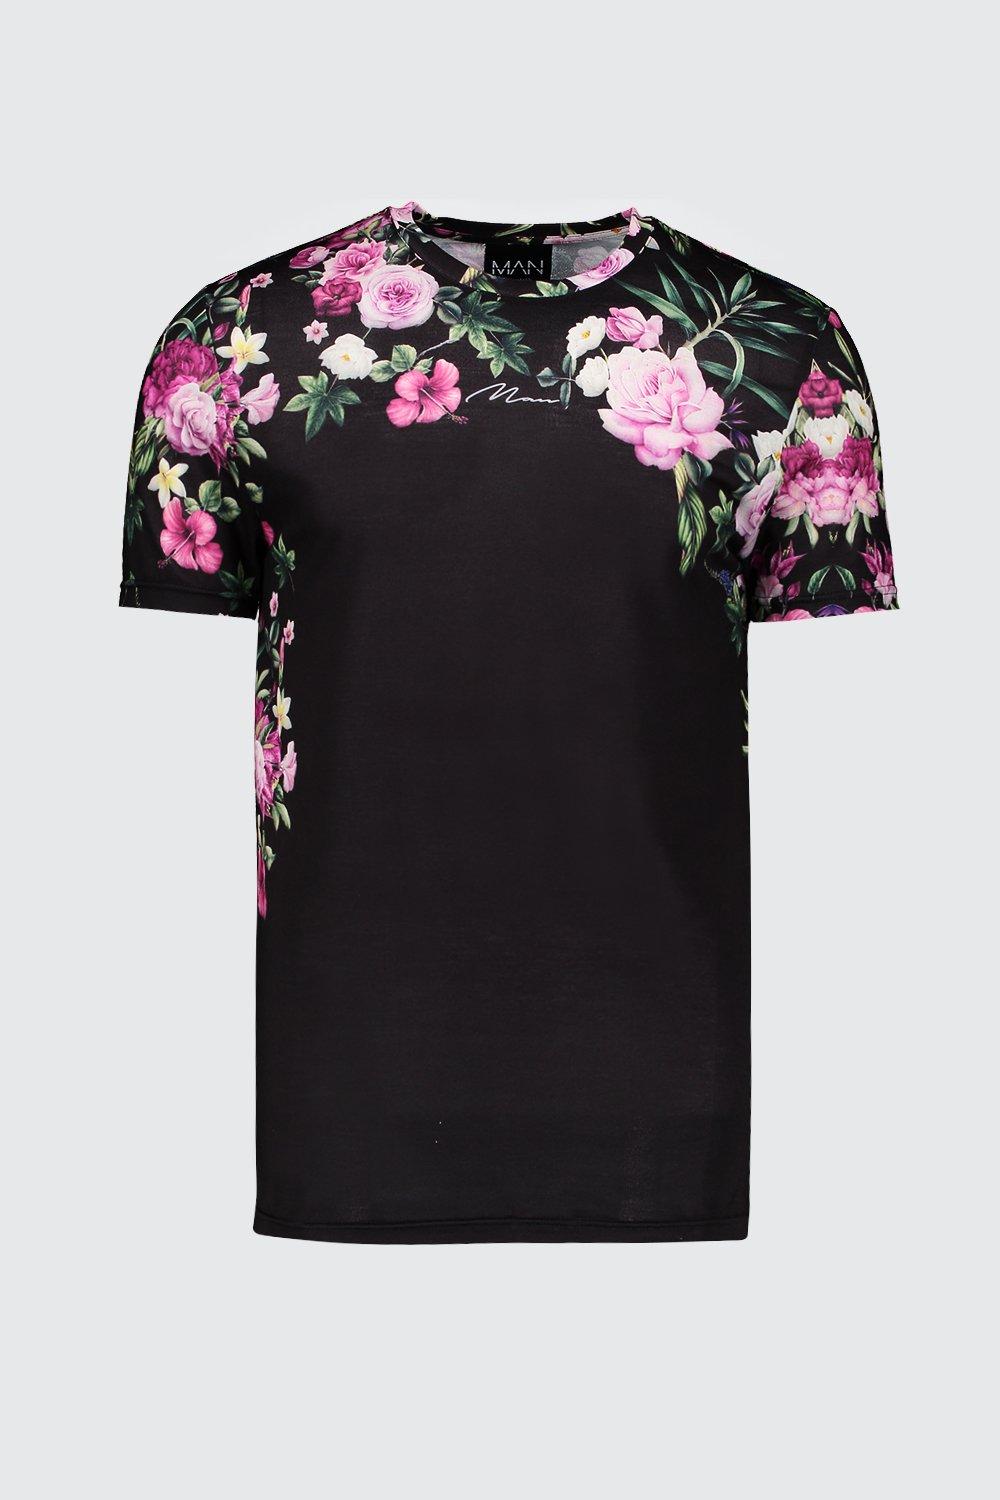 floral t shirt